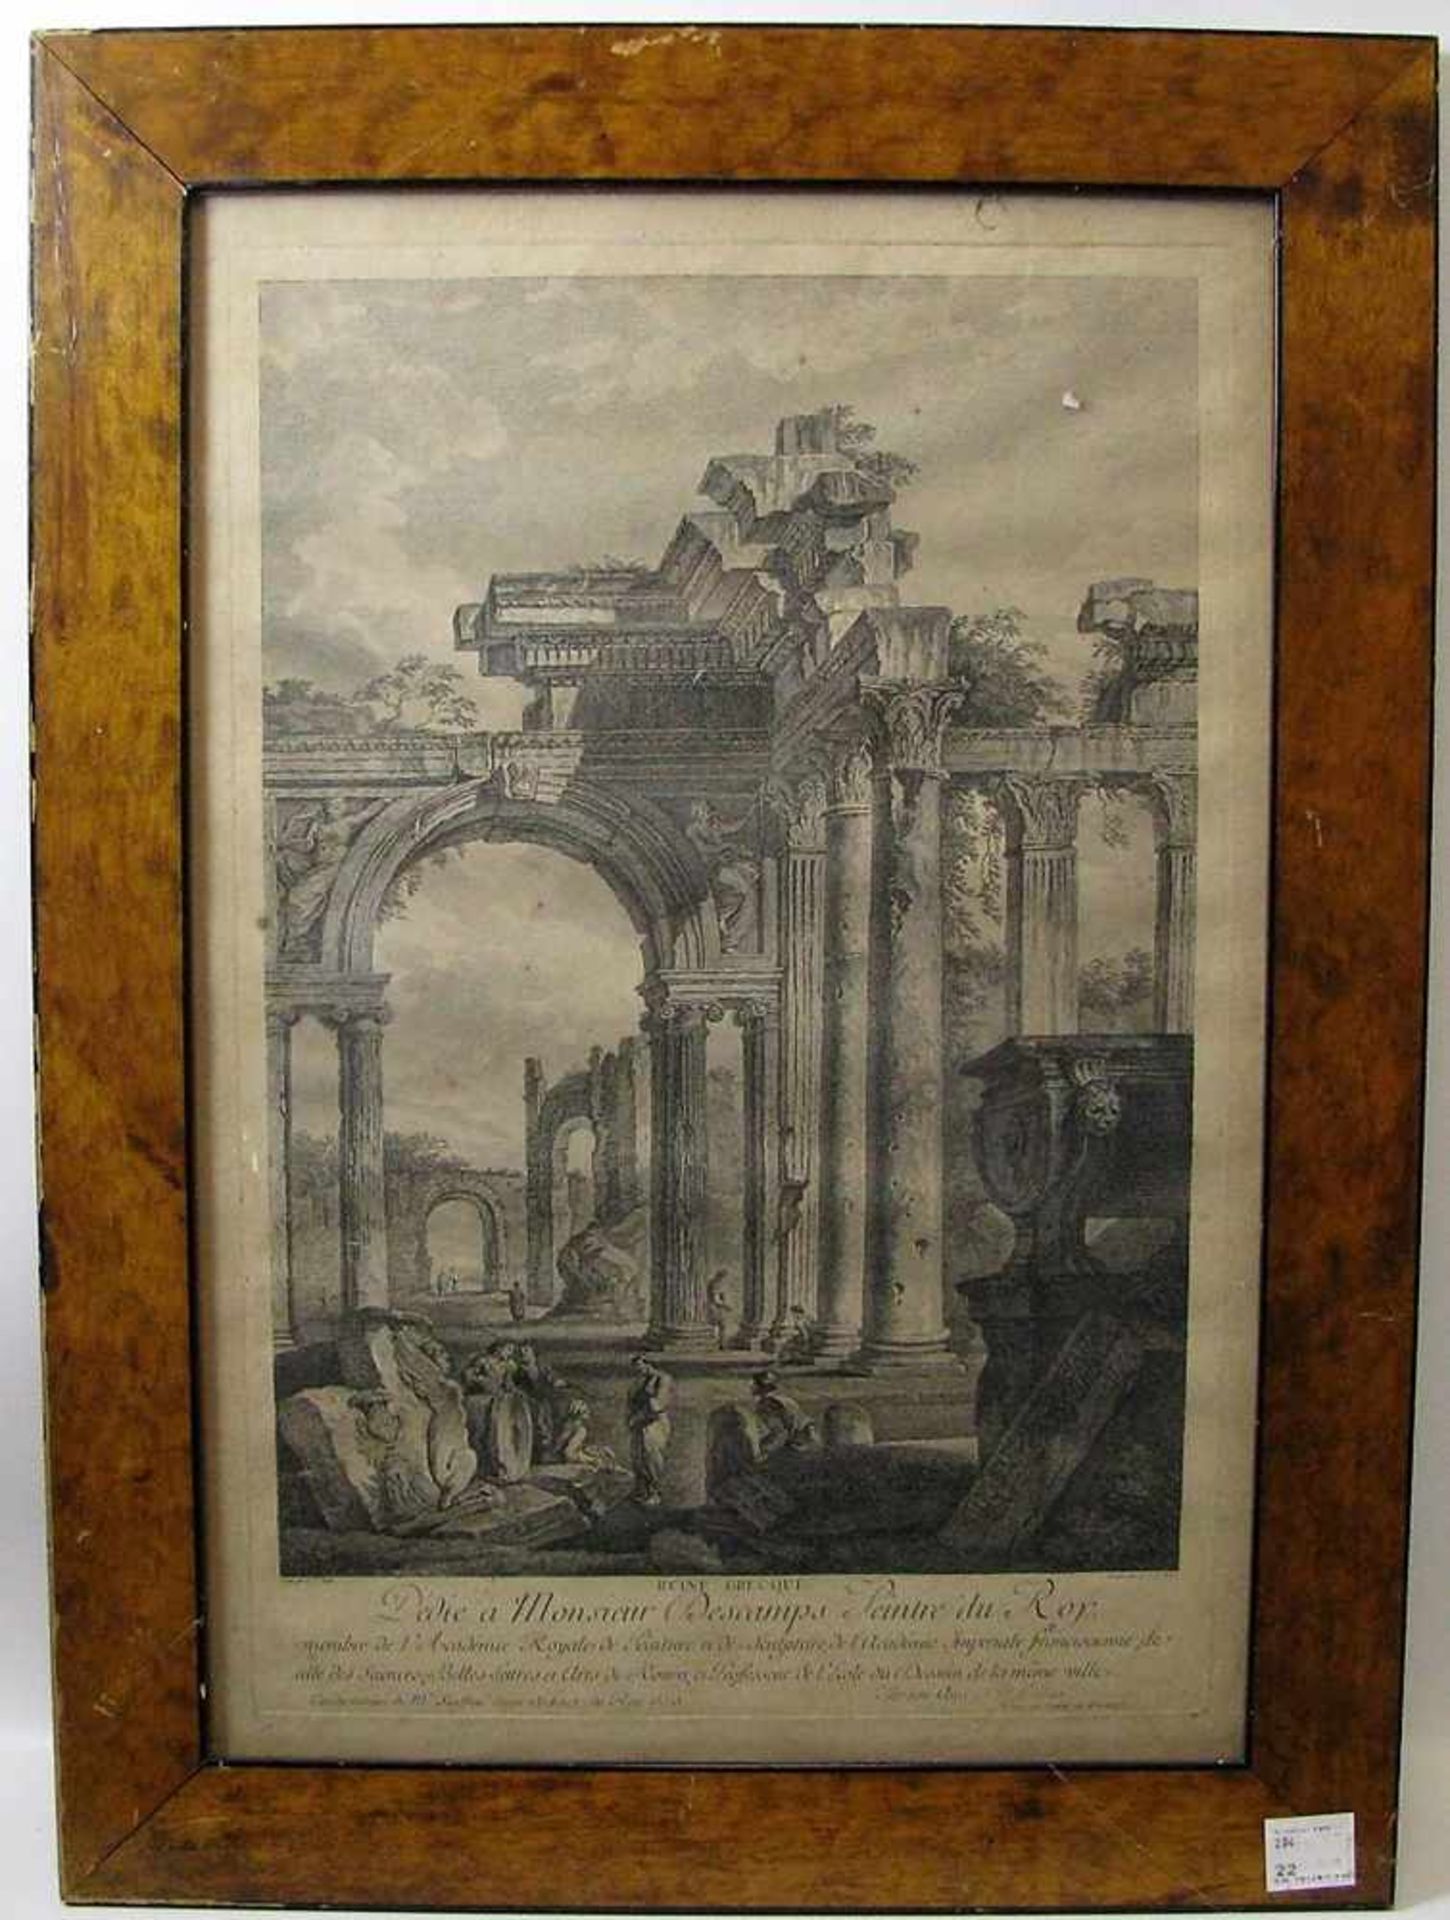 Kupferstich, 18. Jahrhundert, "Ruinenansicht", 46 x 31 cm, R.- - -19.00 % buyer's premium on the